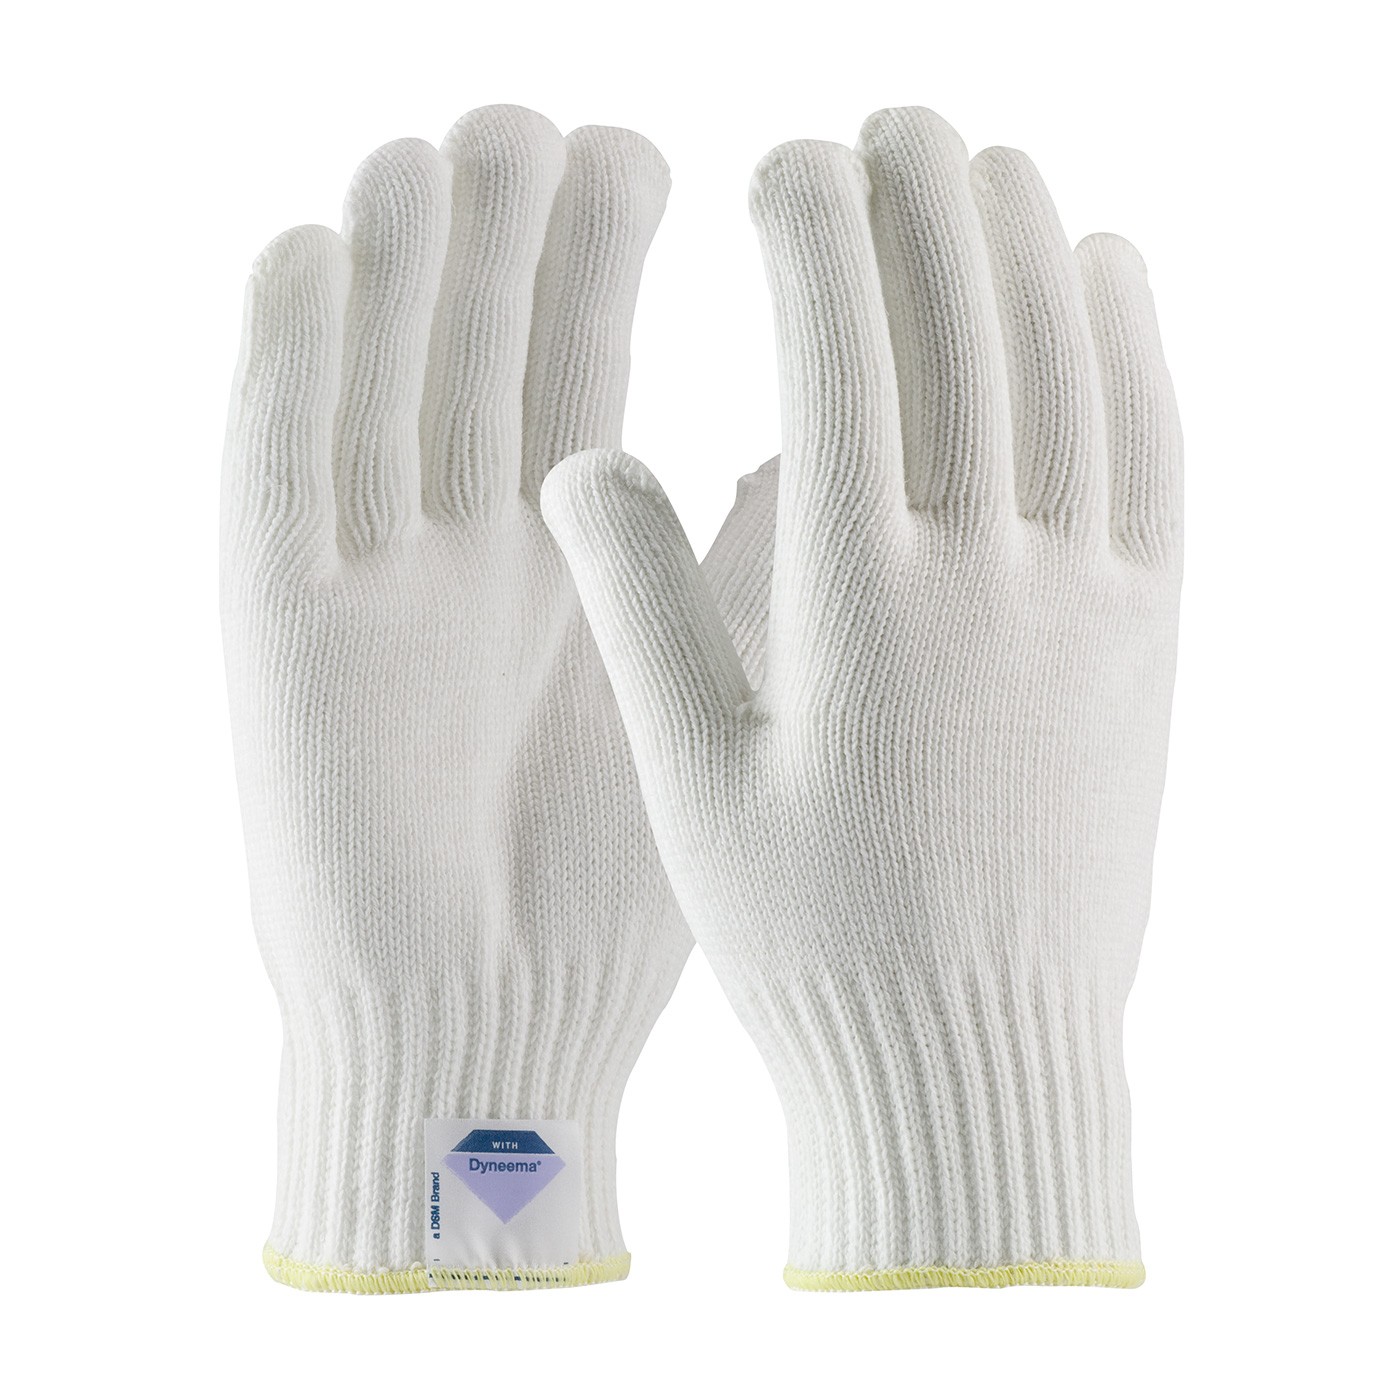 Kut Gard® Seamless Knit Spun Dyneema® Glove - Heavy Weight  (#17-SD350)